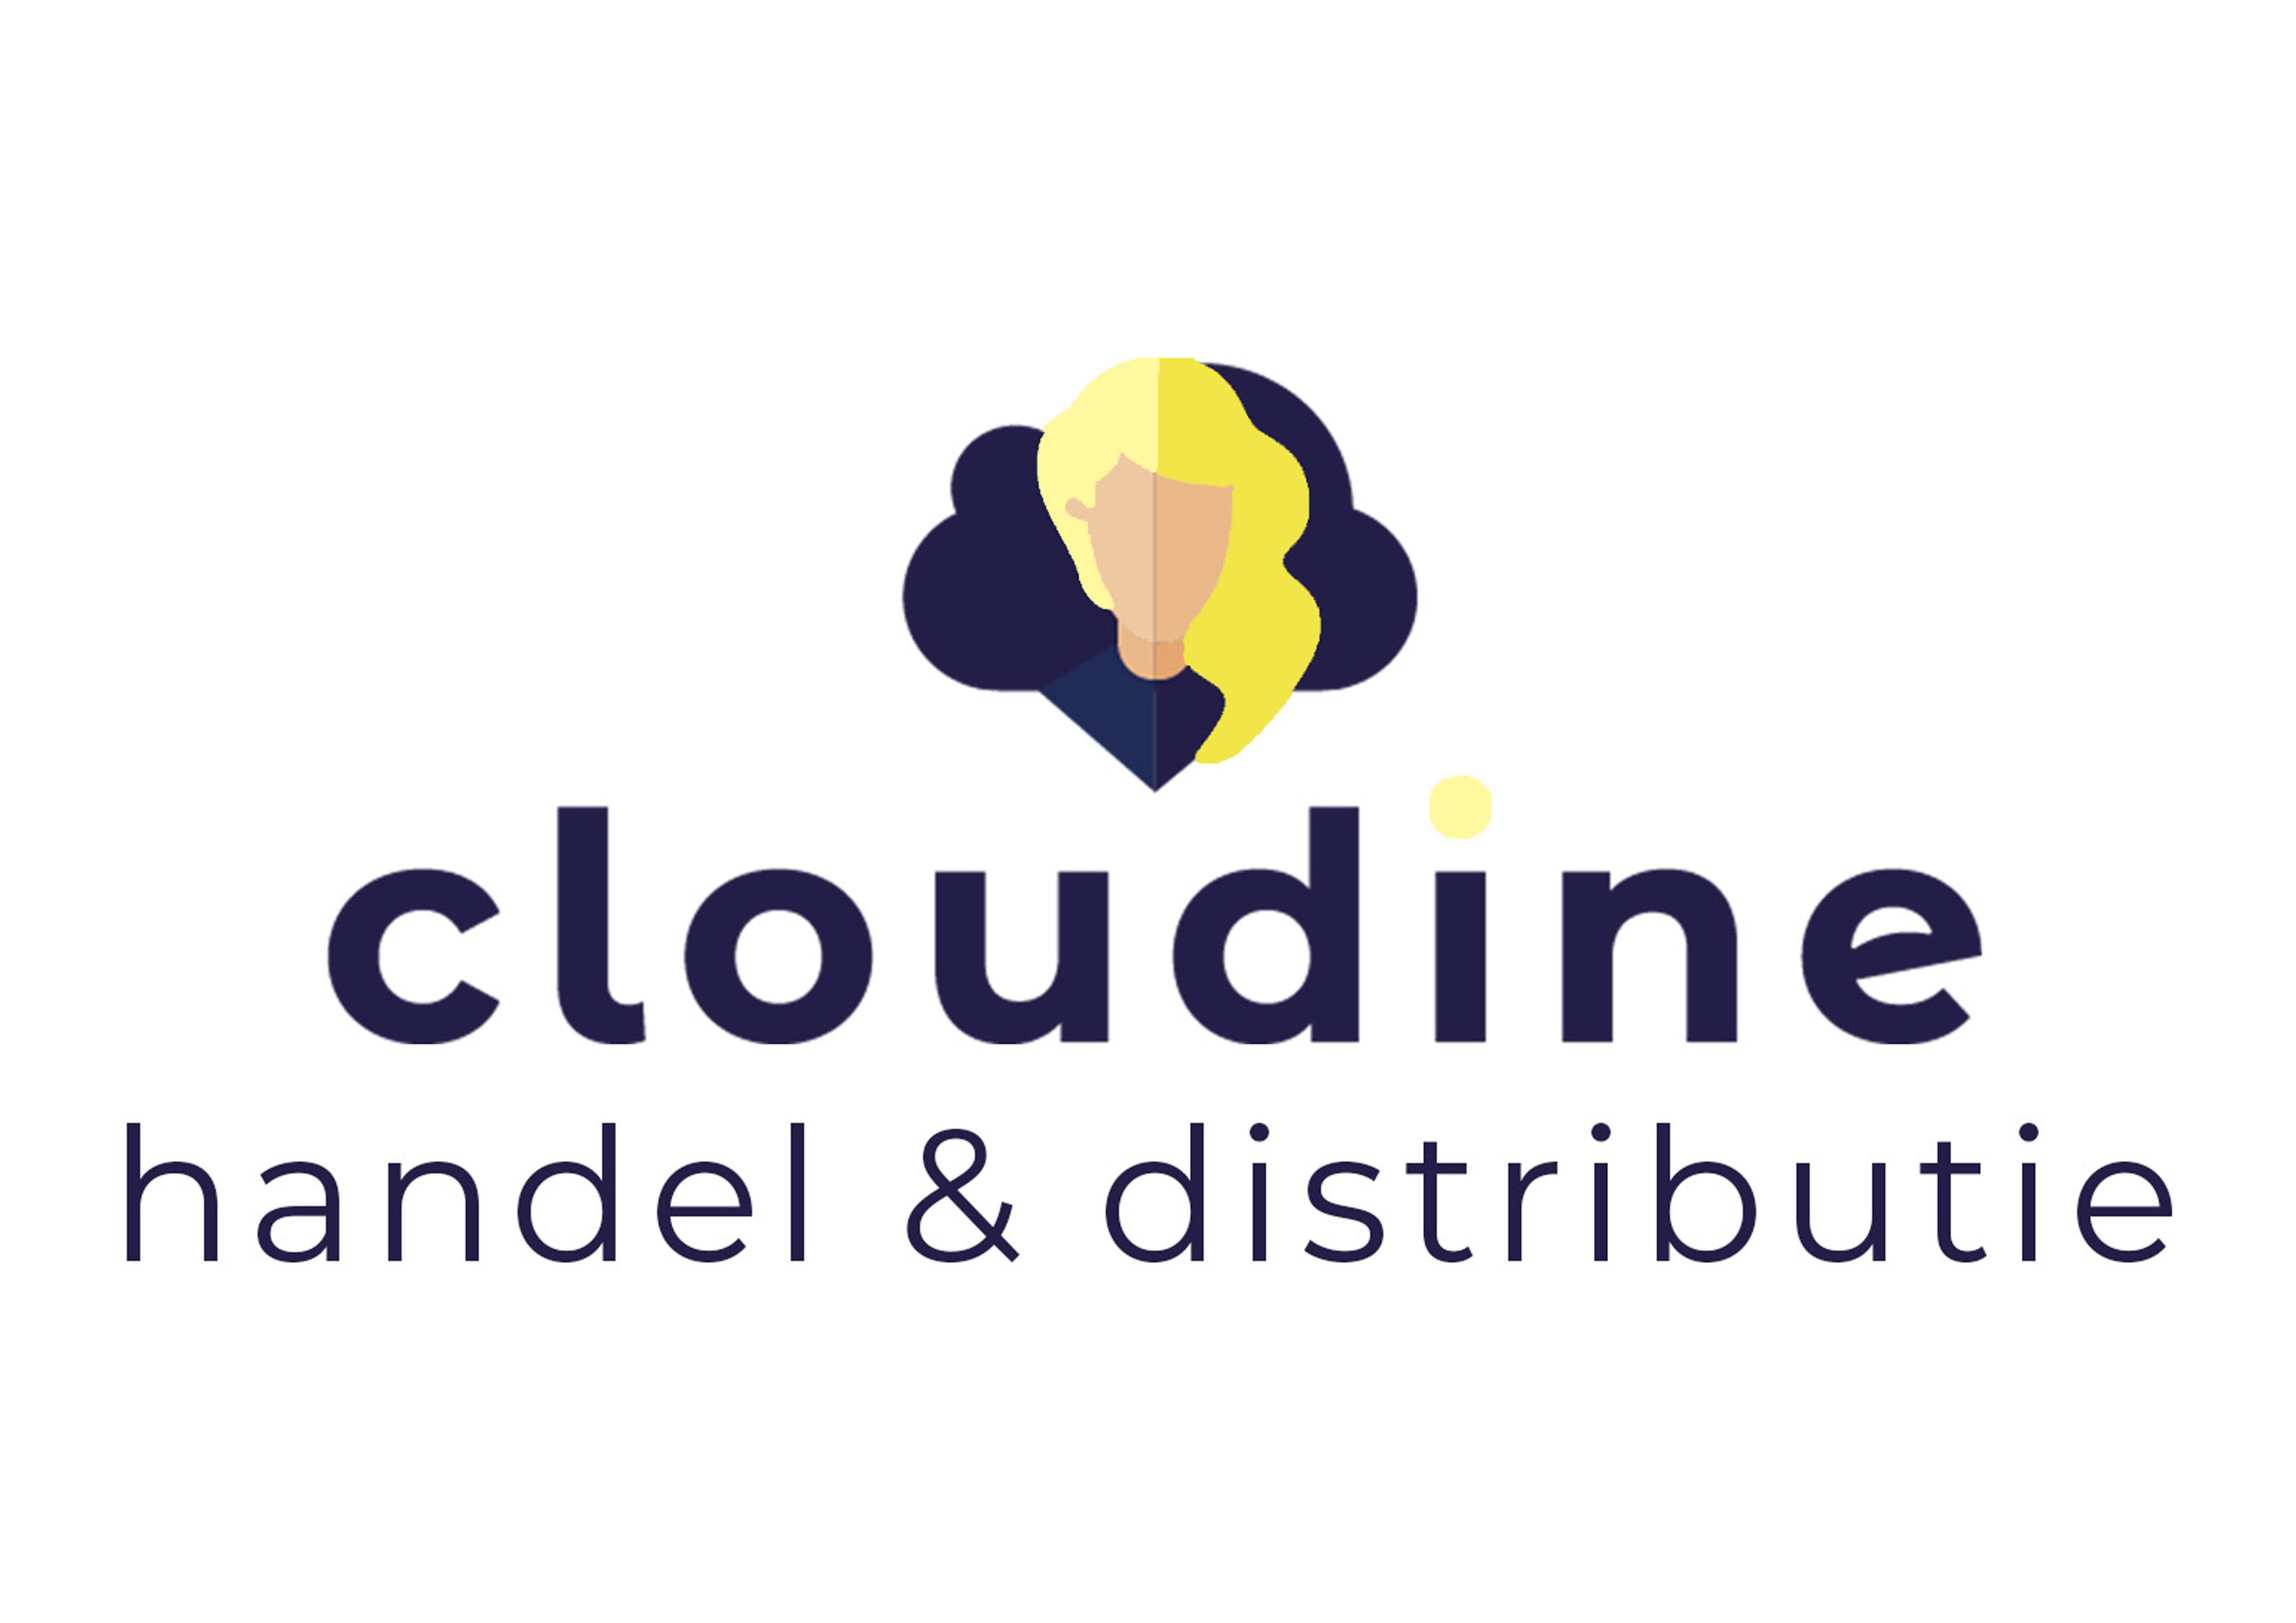 Cloudine - handel & distributie branche | Fourtop ICT